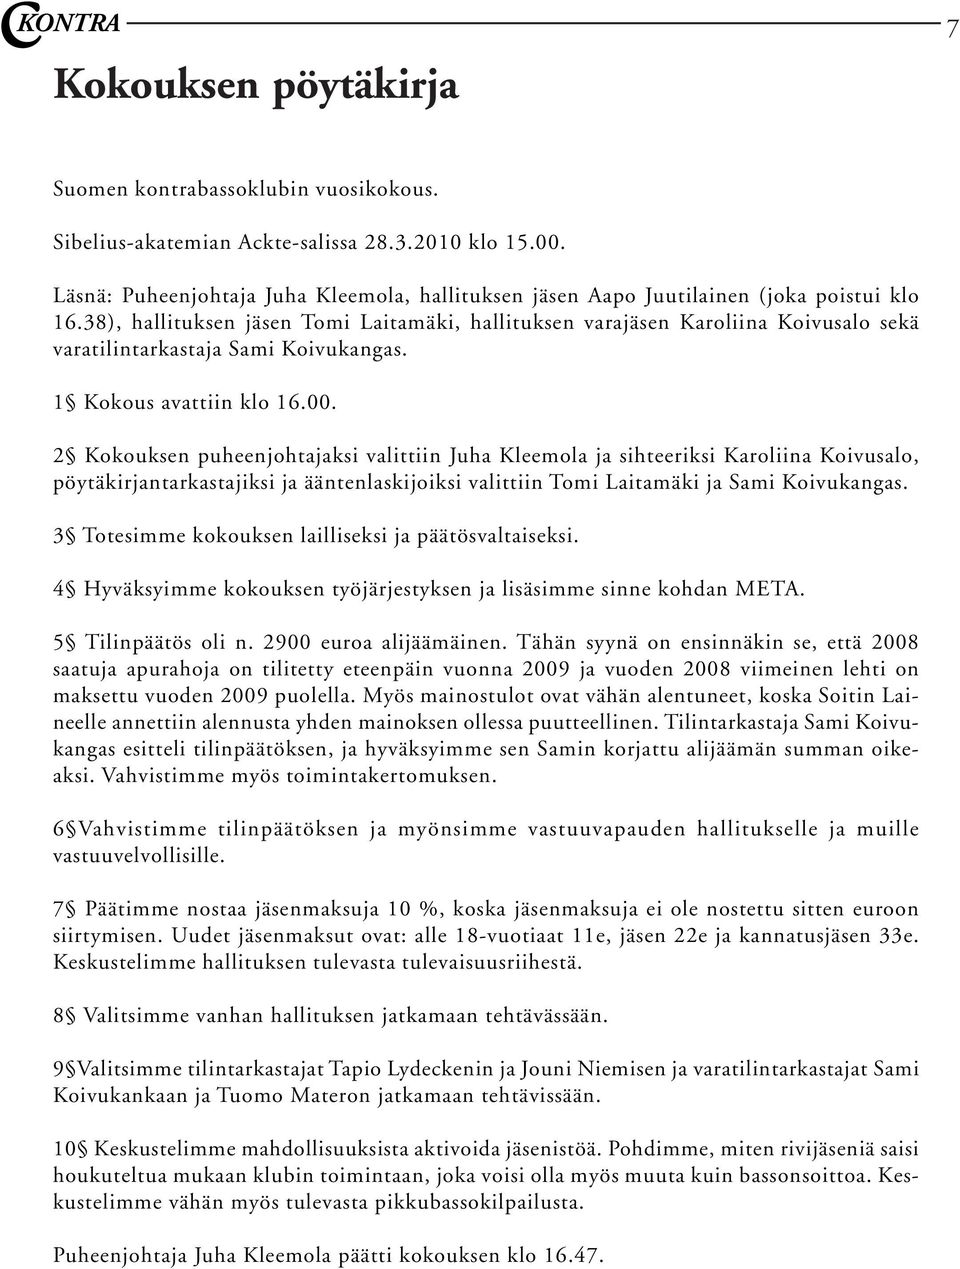 38), hallituksen jäsen Tomi Laitamäki, hallituksen varajäsen Karoliina Koivusalo sekä varatilintarkastaja Sami Koivukangas. 1 Kokous avattiin klo 16.00.